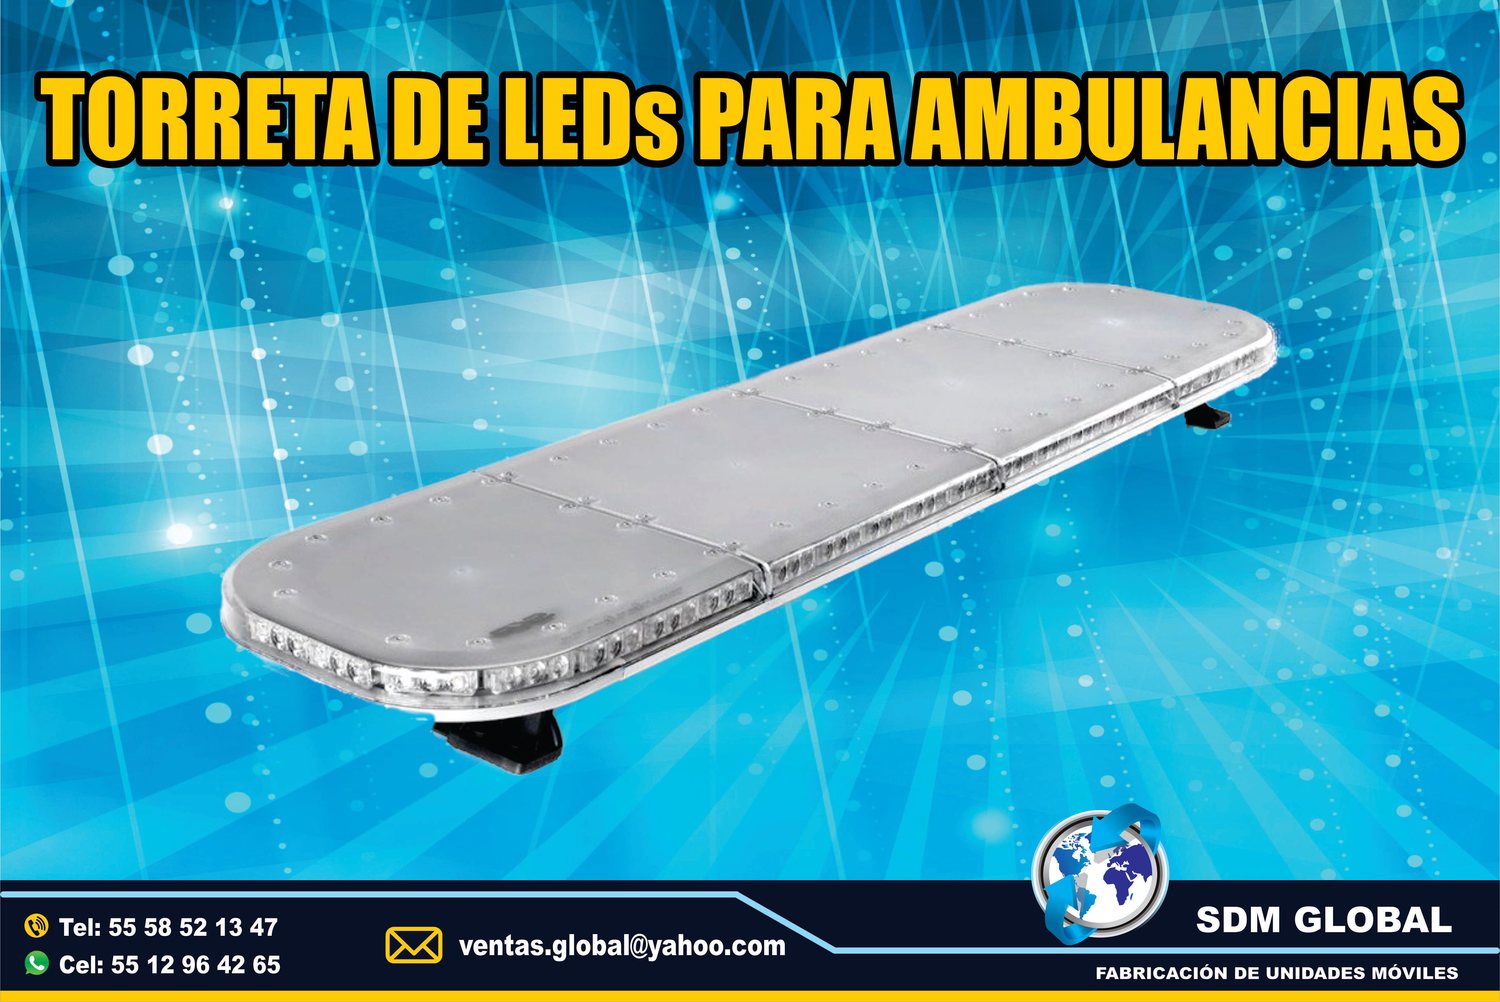 VENTA DE Torreta y equipo para ambulancias MARCA Epcom System<br>